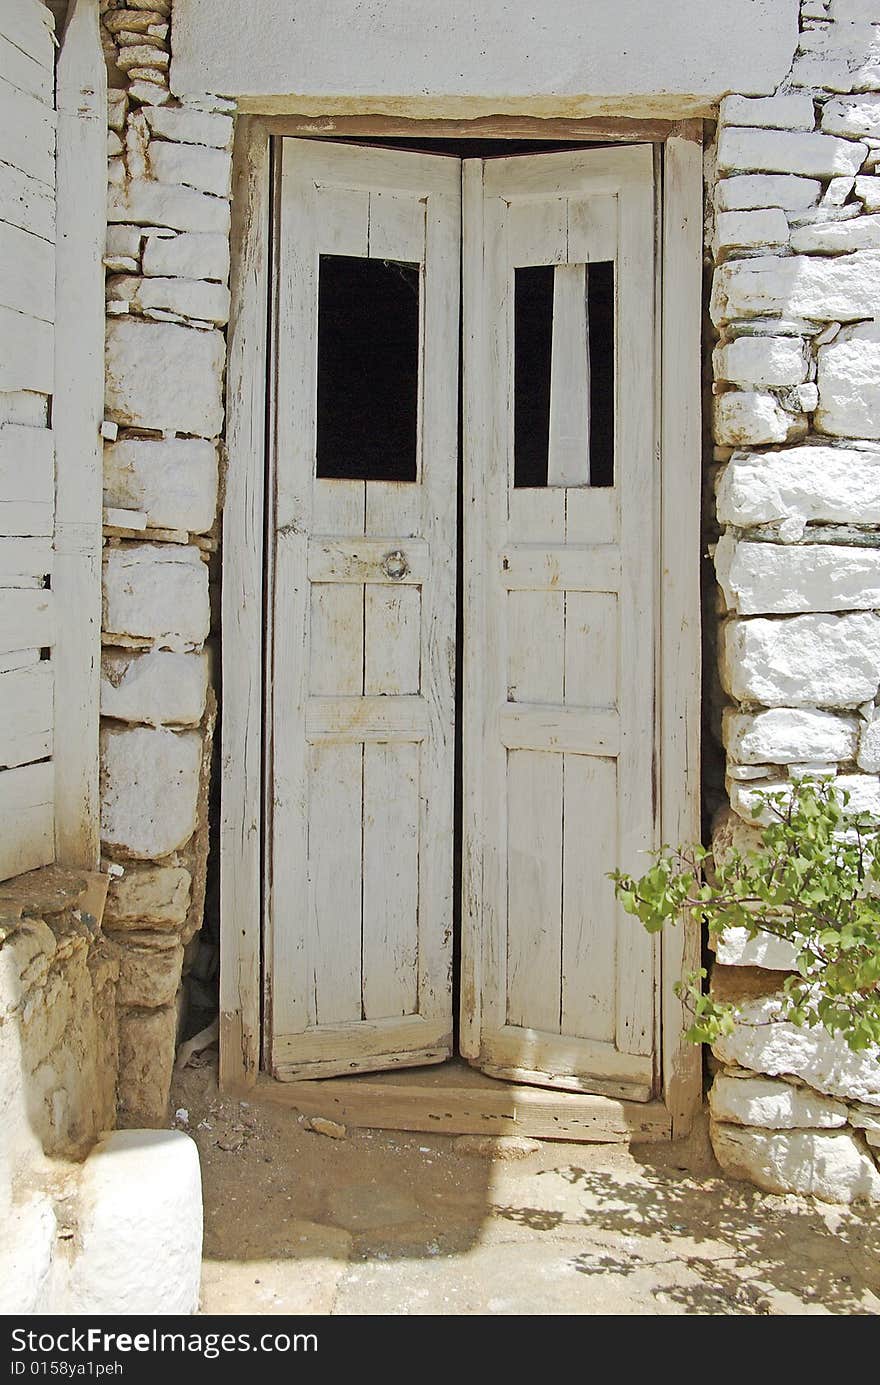 Old wooden door detail in Cyclades